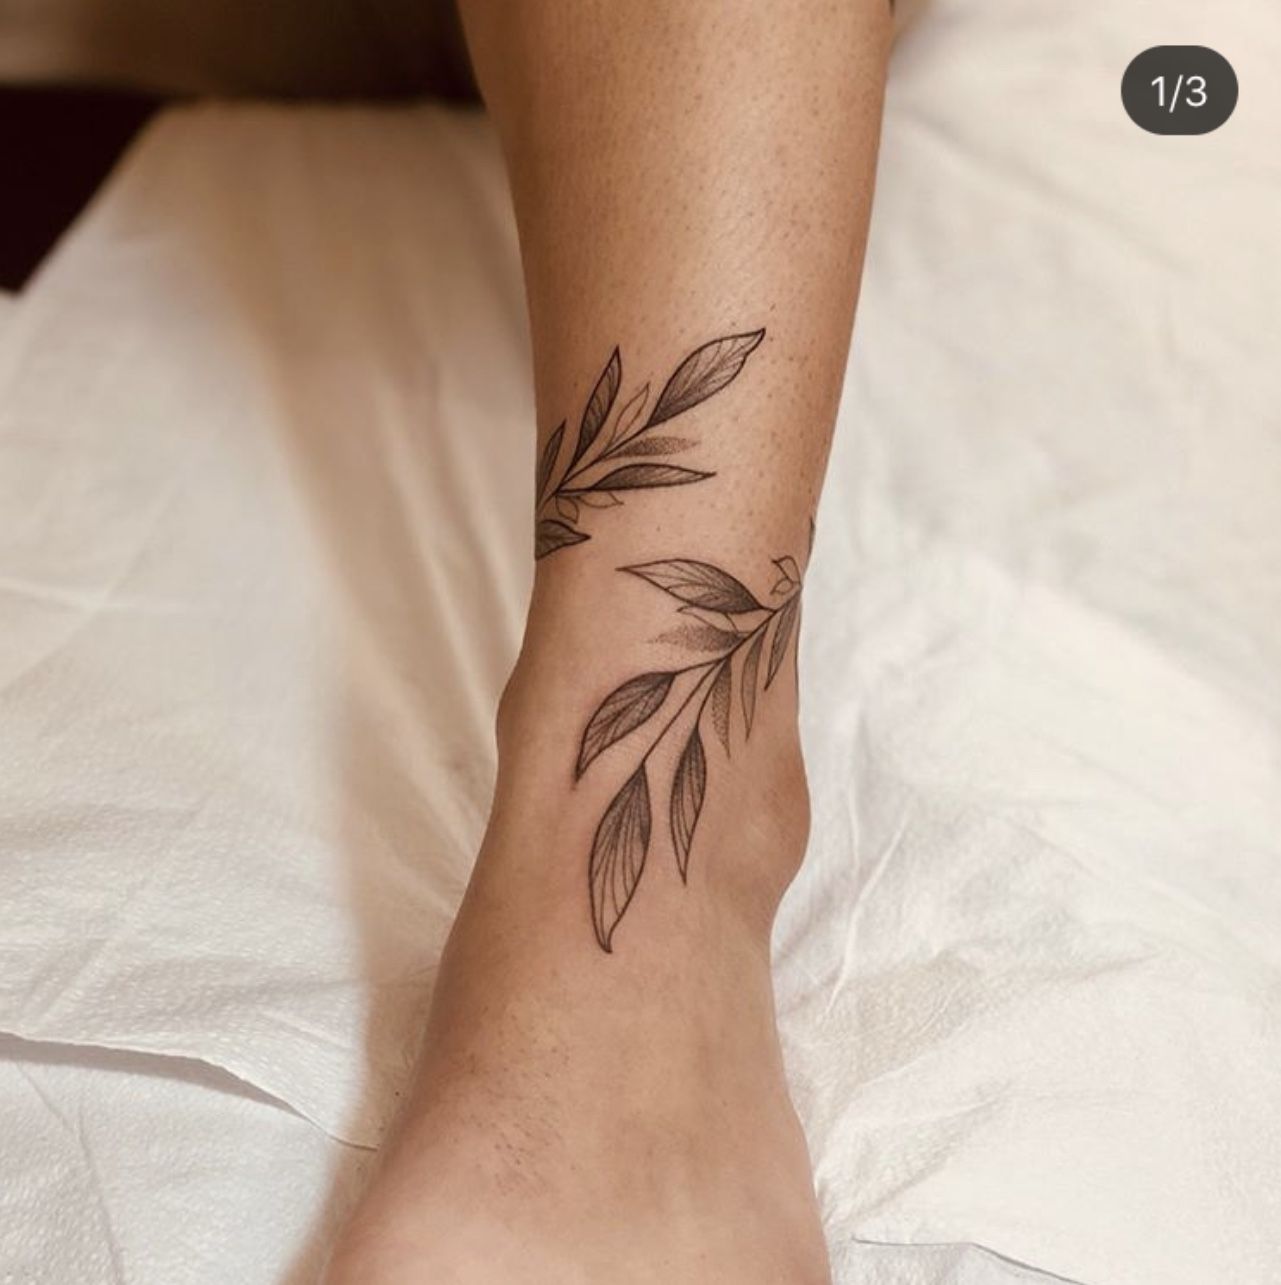 leaf tattoo on foot